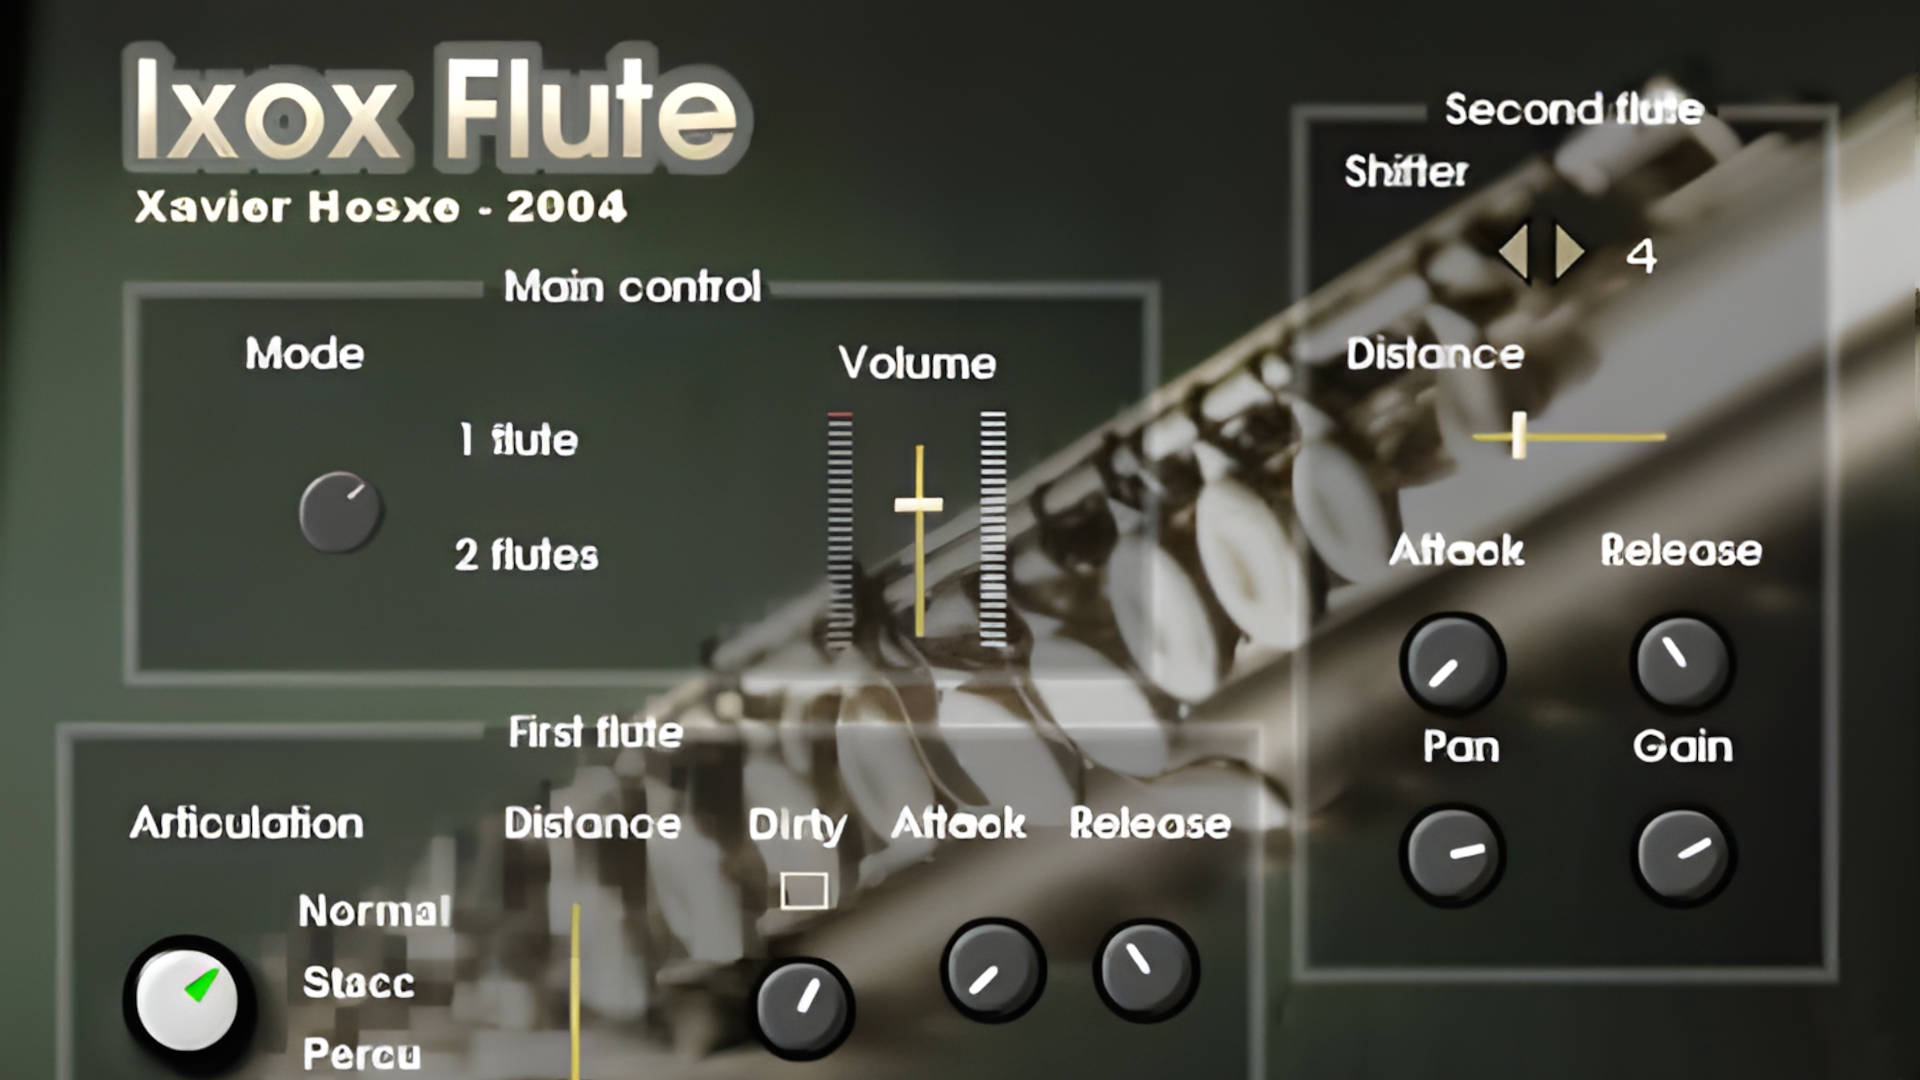 Ixox Flute